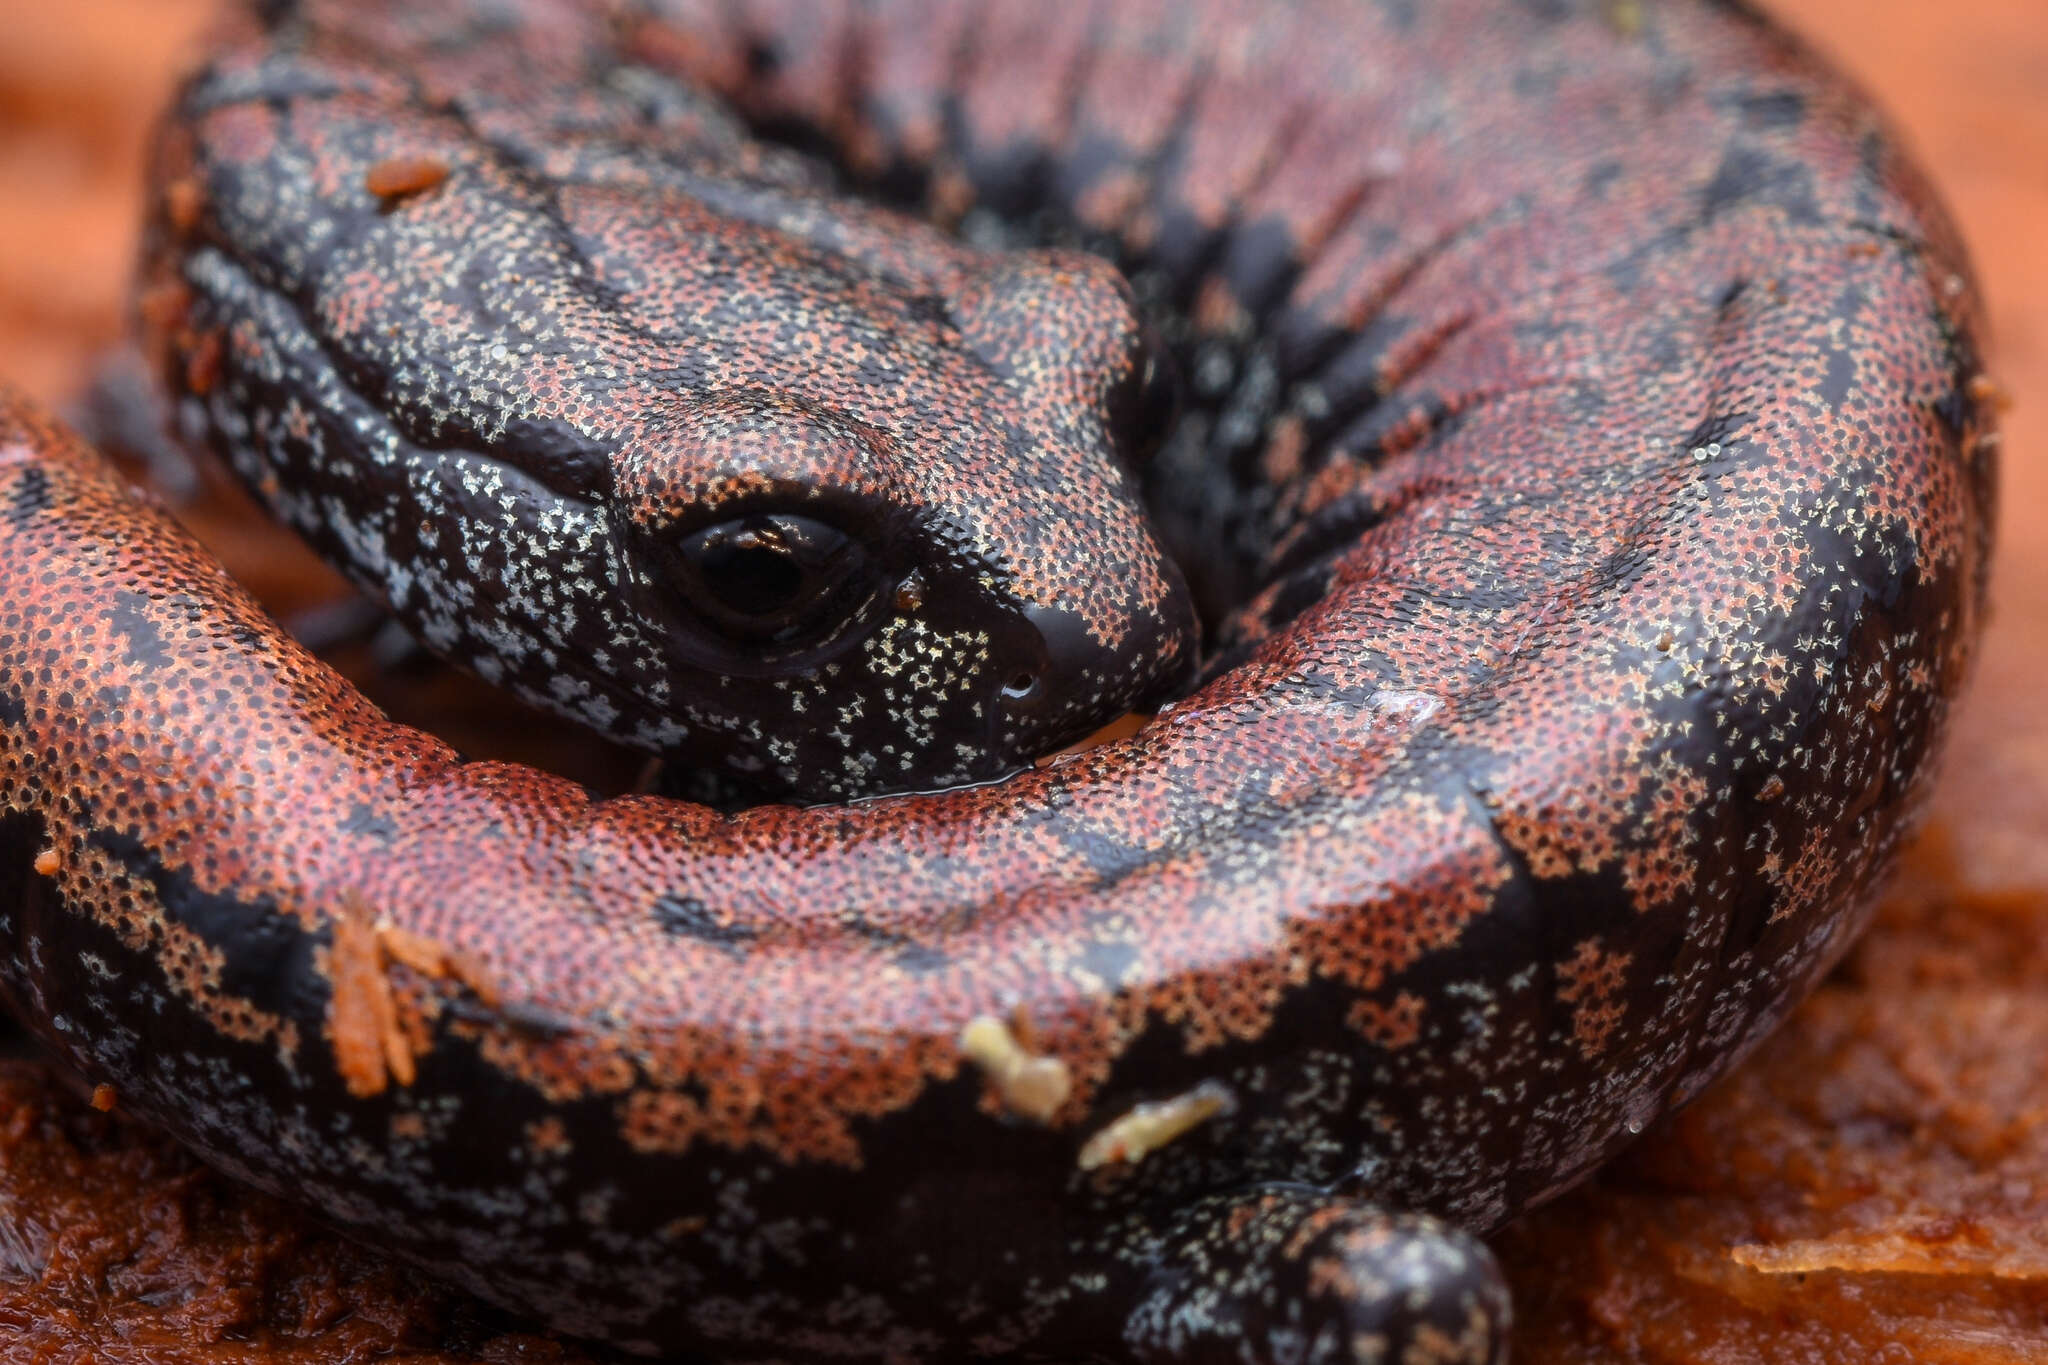 Image of Oregon Slender Salamander